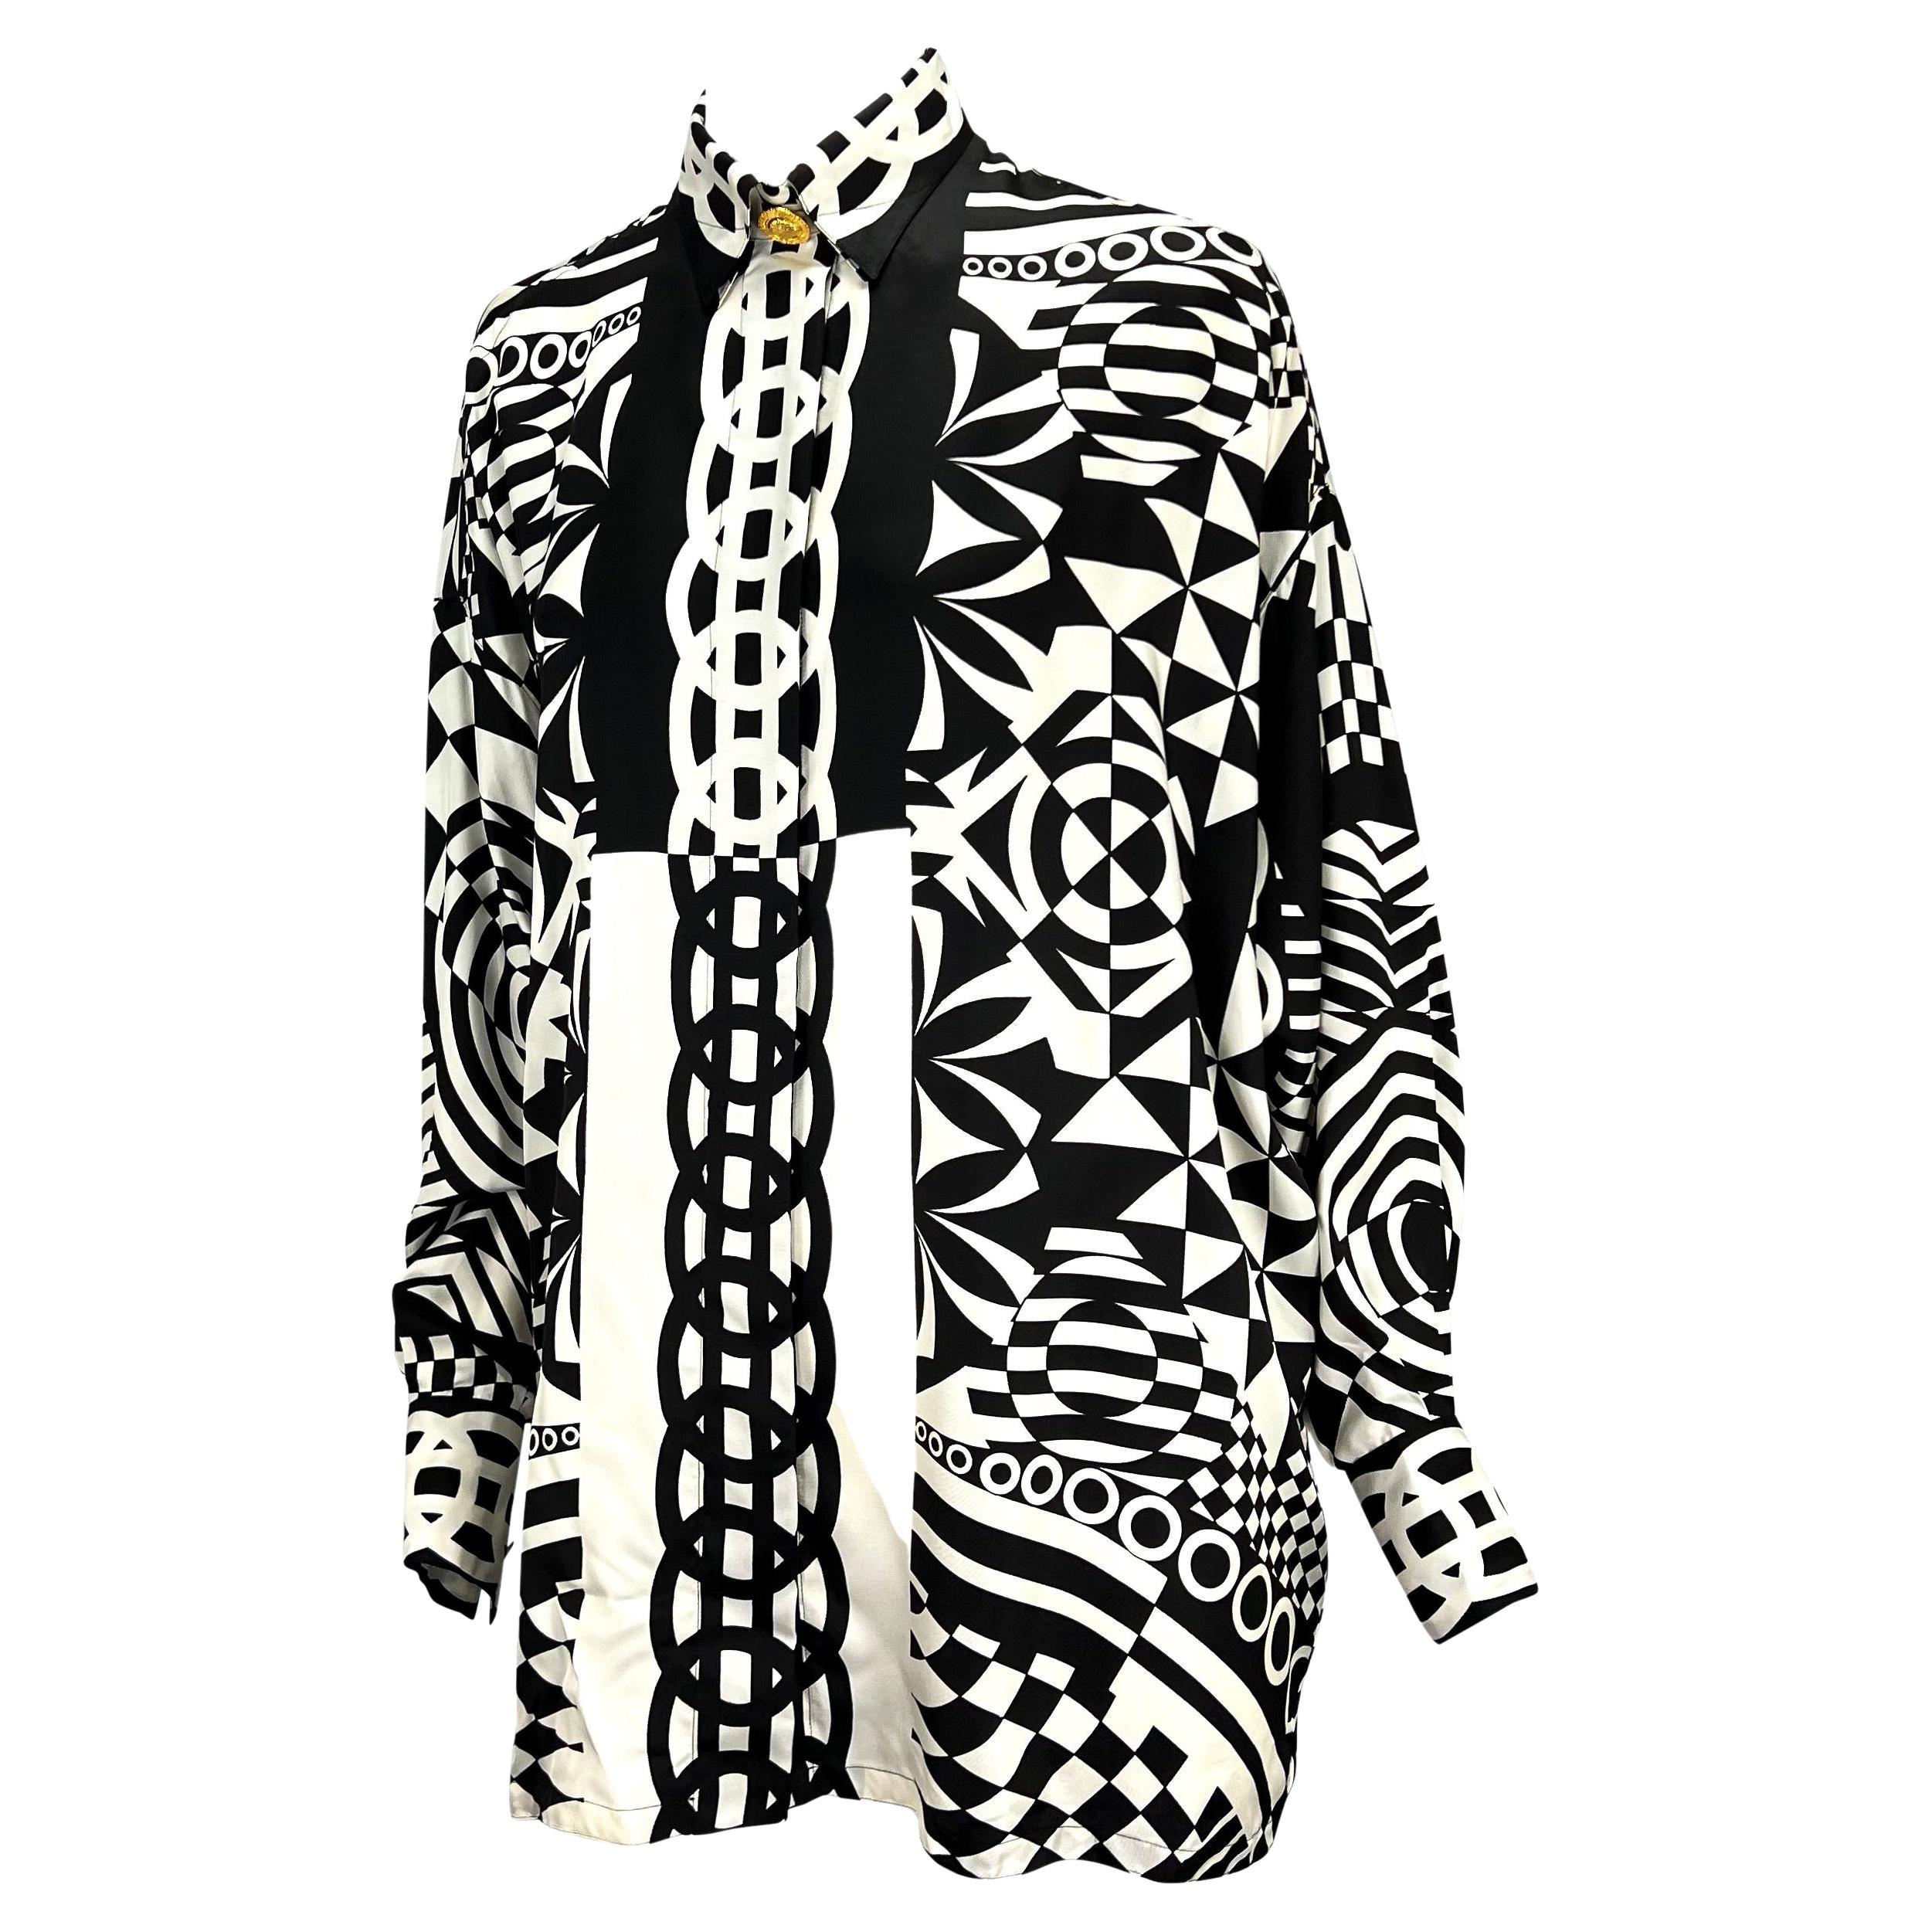 Wir präsentieren ein atemberaubendes monochromes Gianni Versace Couture Hemd aus Seide, entworfen von Gianni Versace. Dieses schwarz-weiße Seiden-Knopfleisten-Oberteil aus der Frühjahr/Sommer-Kollektion 1992 zeichnet sich durch geometrische,